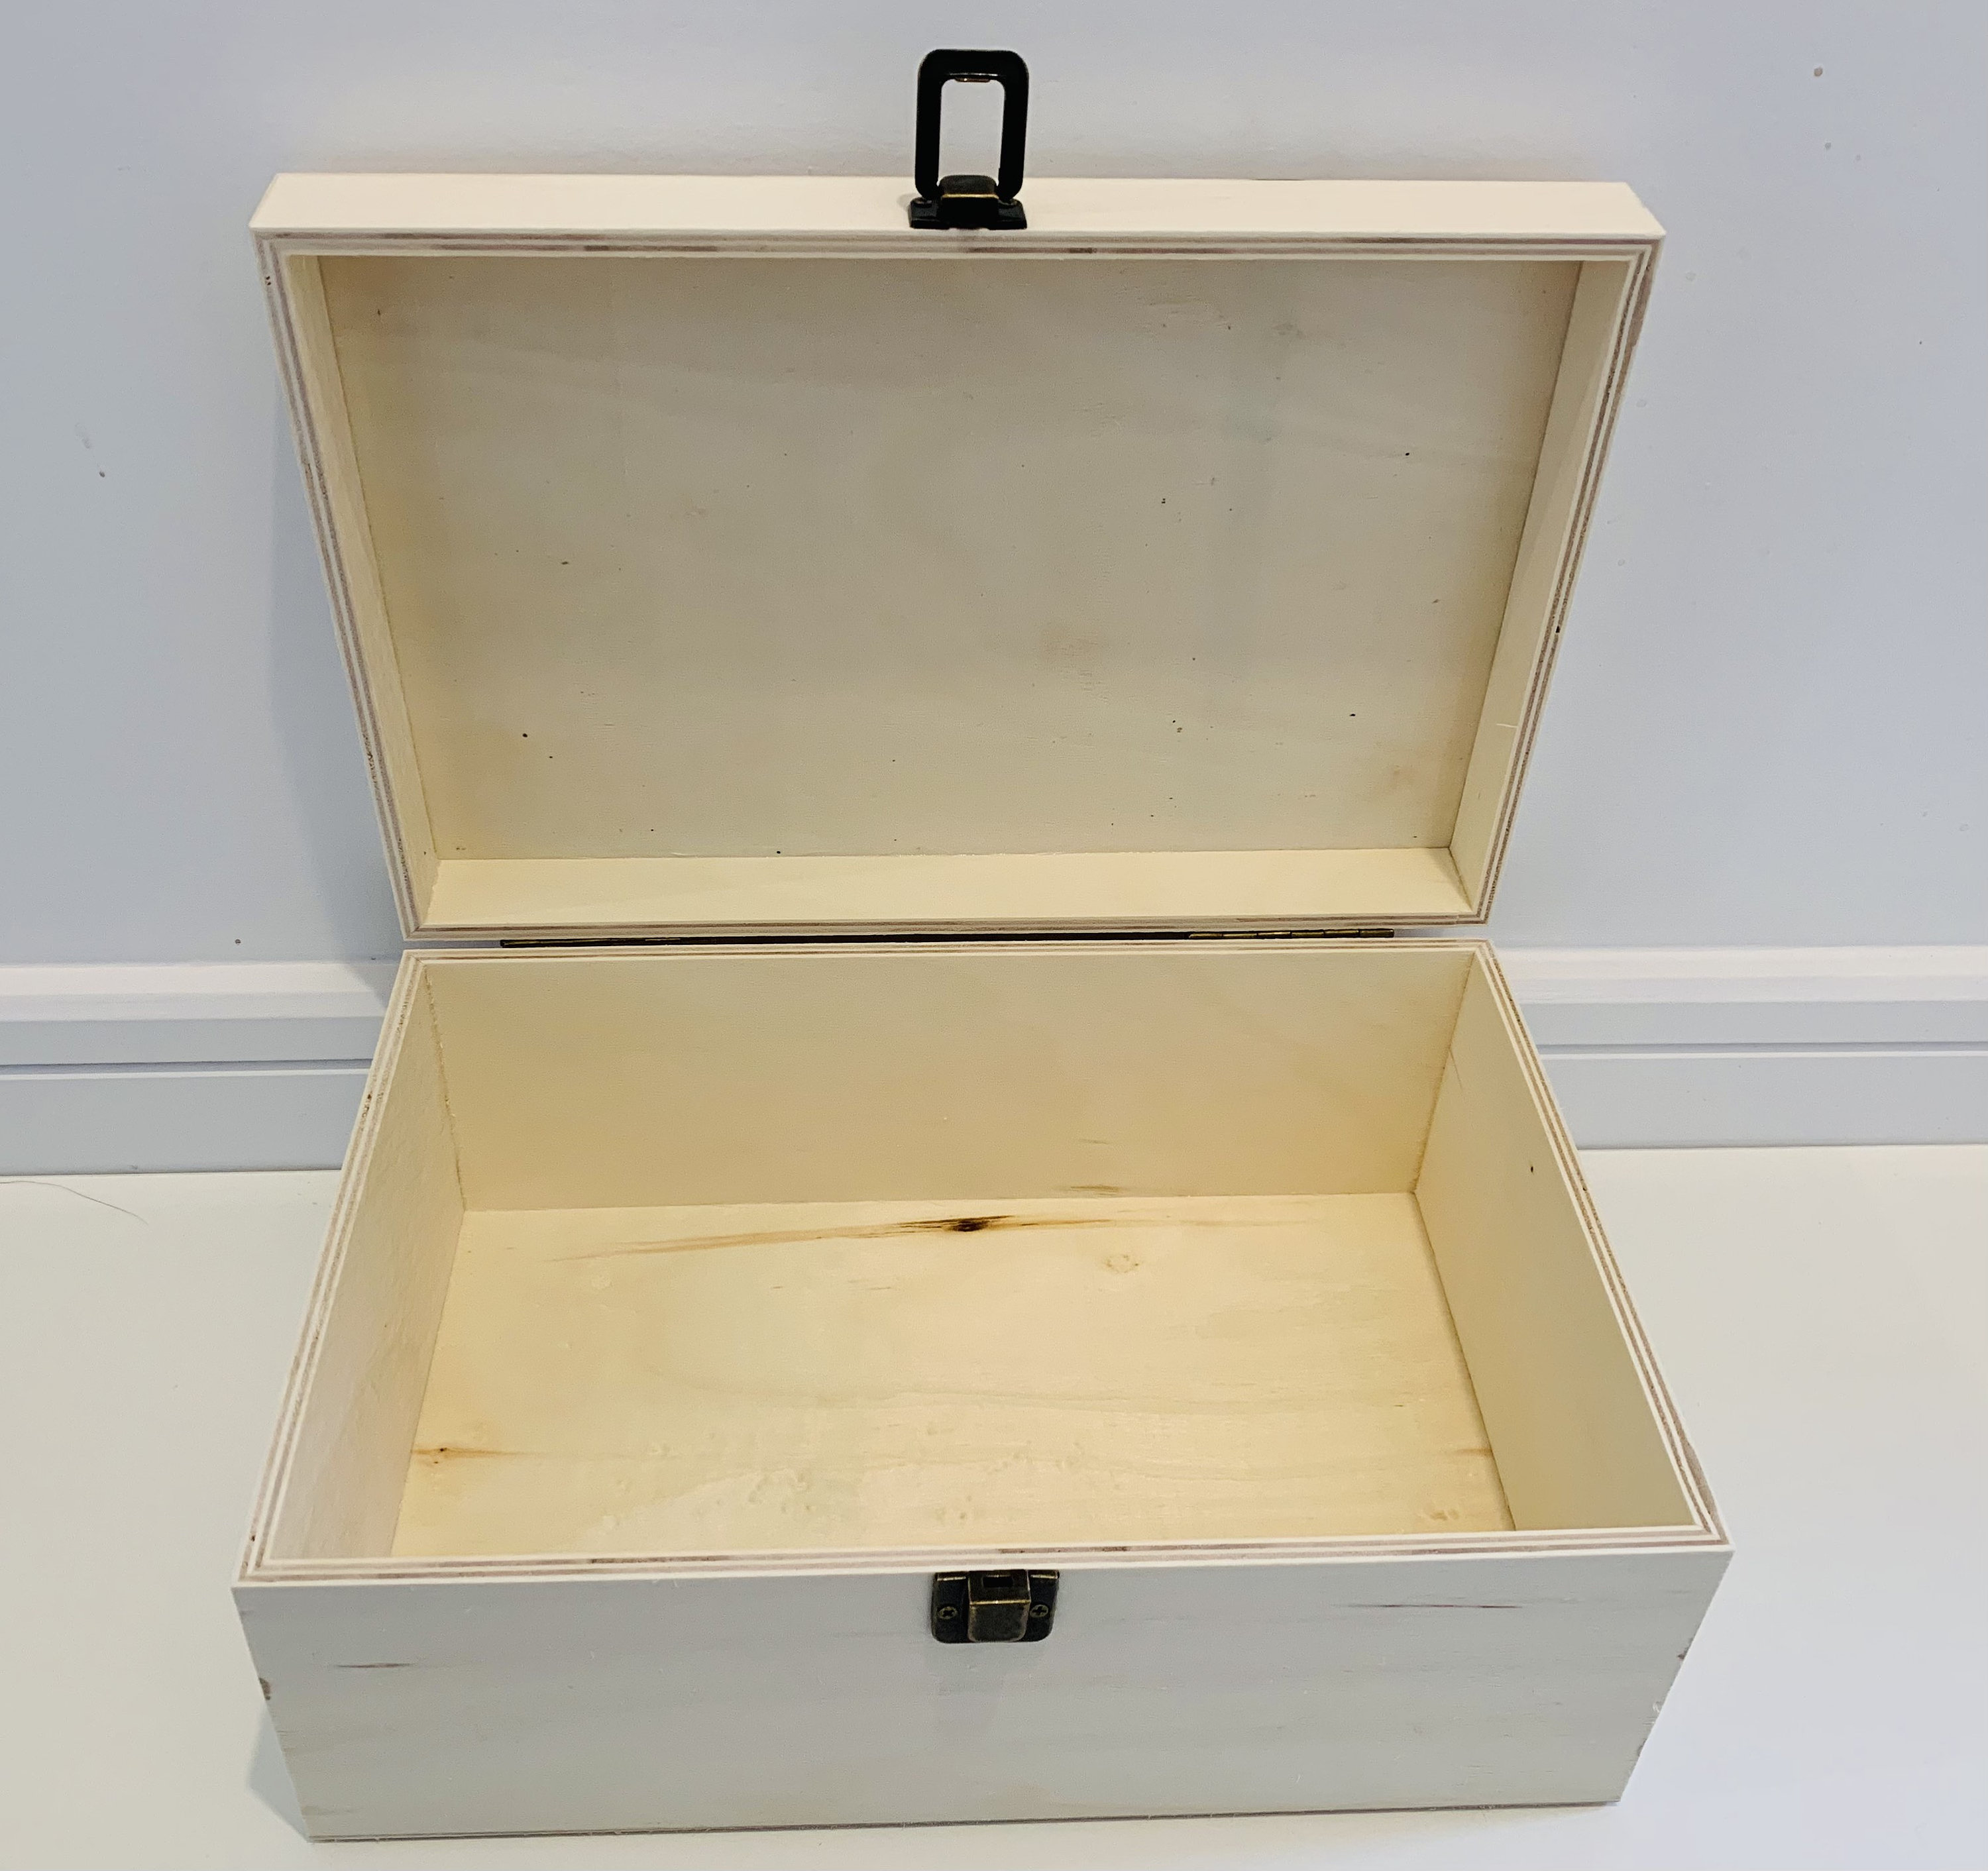 Heartfelt Large Wood Personalized Keepsake Box